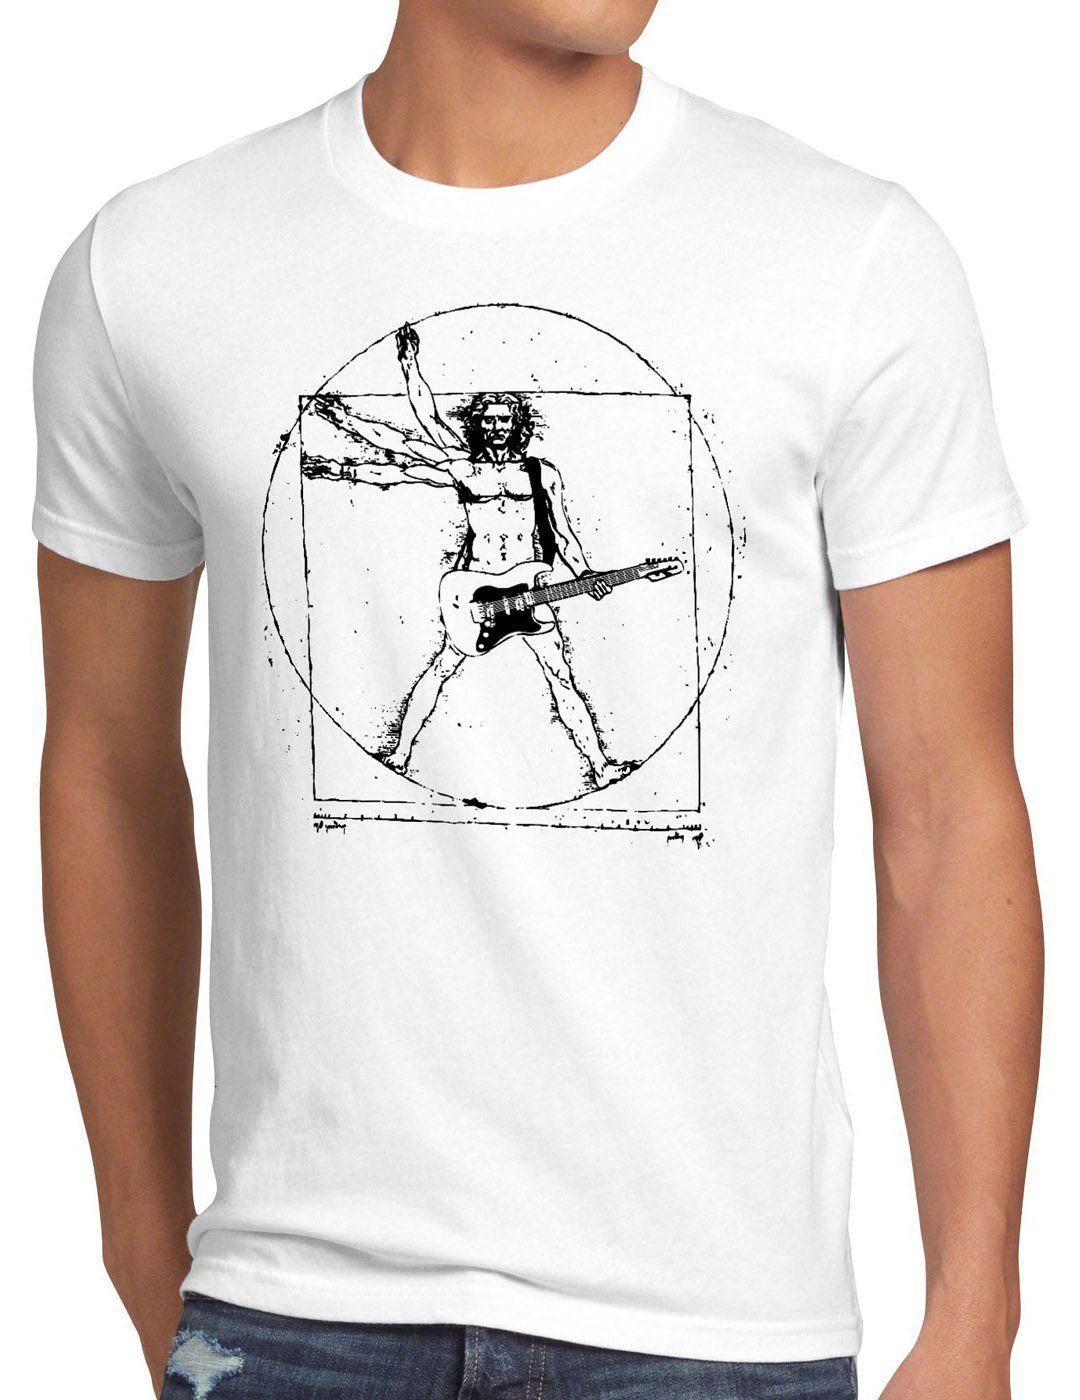 style3 Print-Shirt Herren T-Shirt Da Vinci Rock T-Shirt musik festival gitarre vinyl metal open air wacken mensch weiß